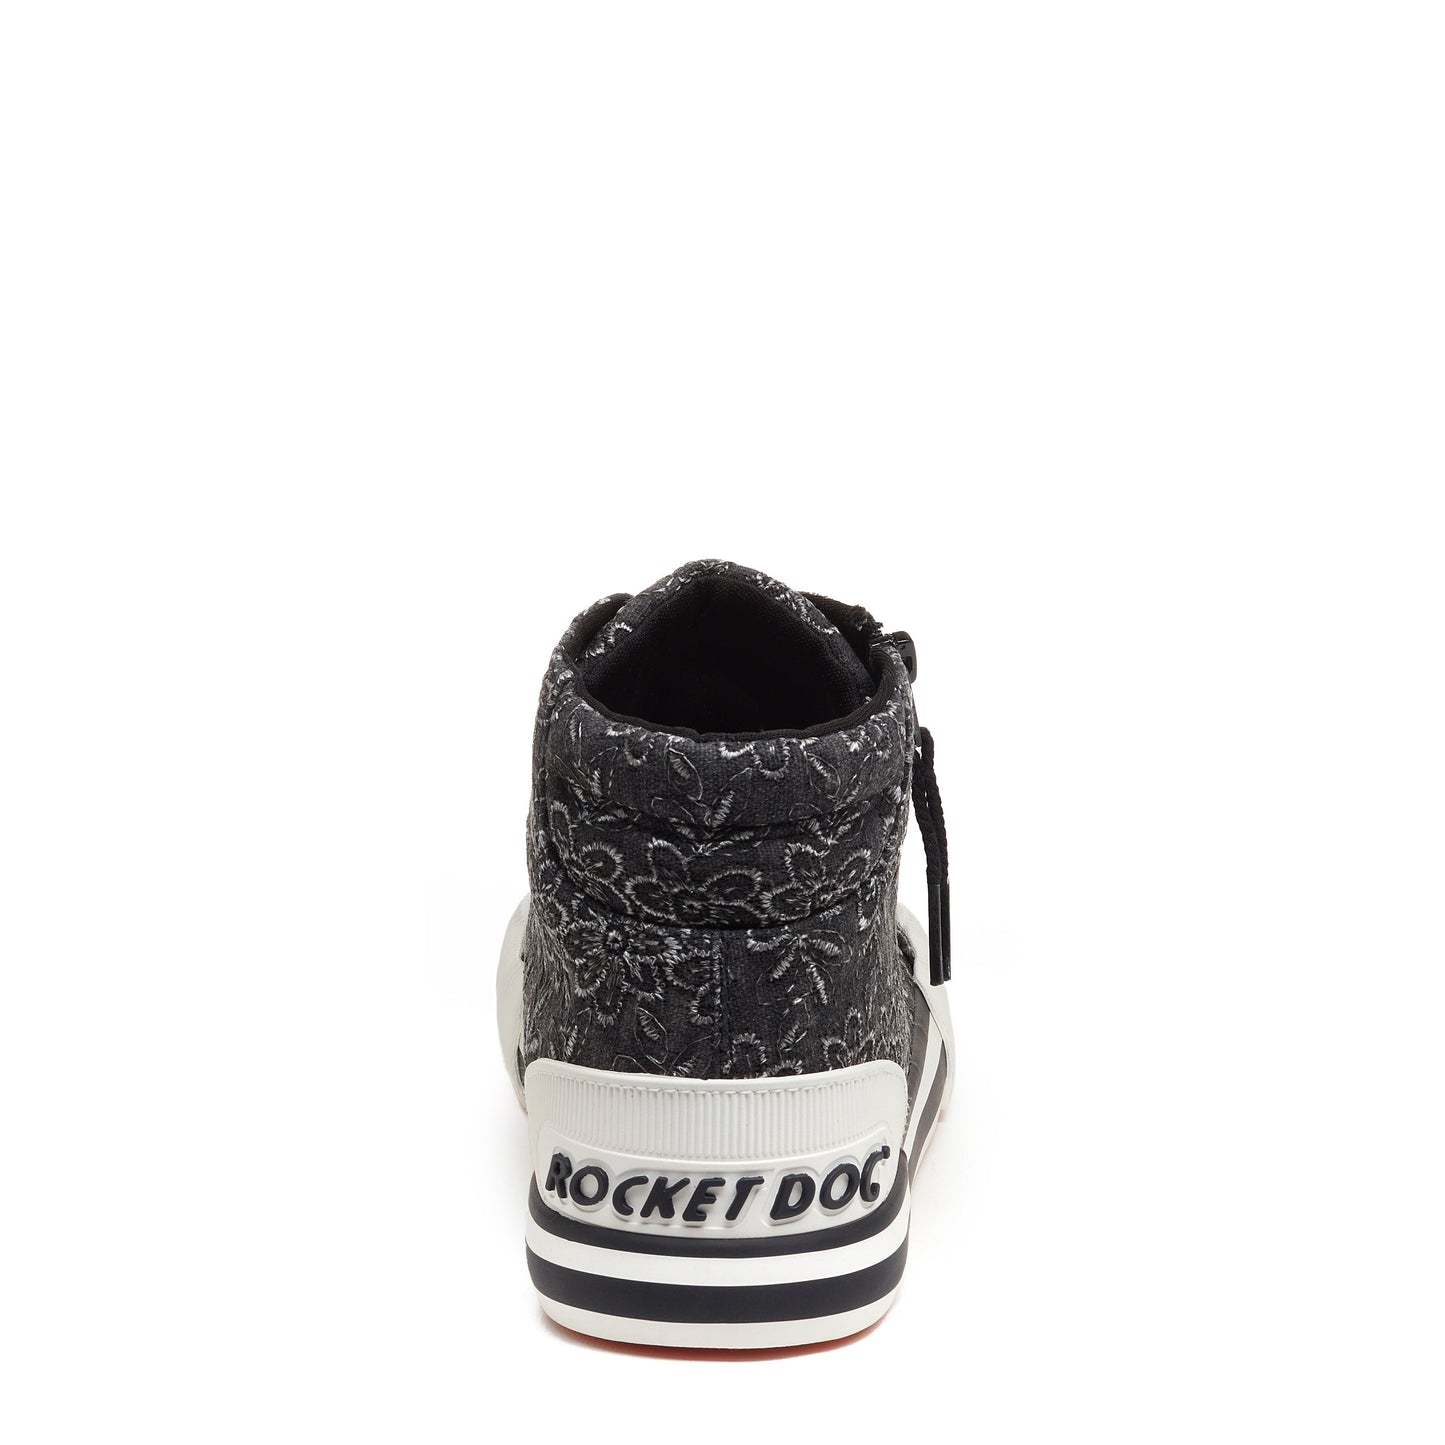 Rocket Dog® Jazzin Black Eyelet Floral High Top Sneaker